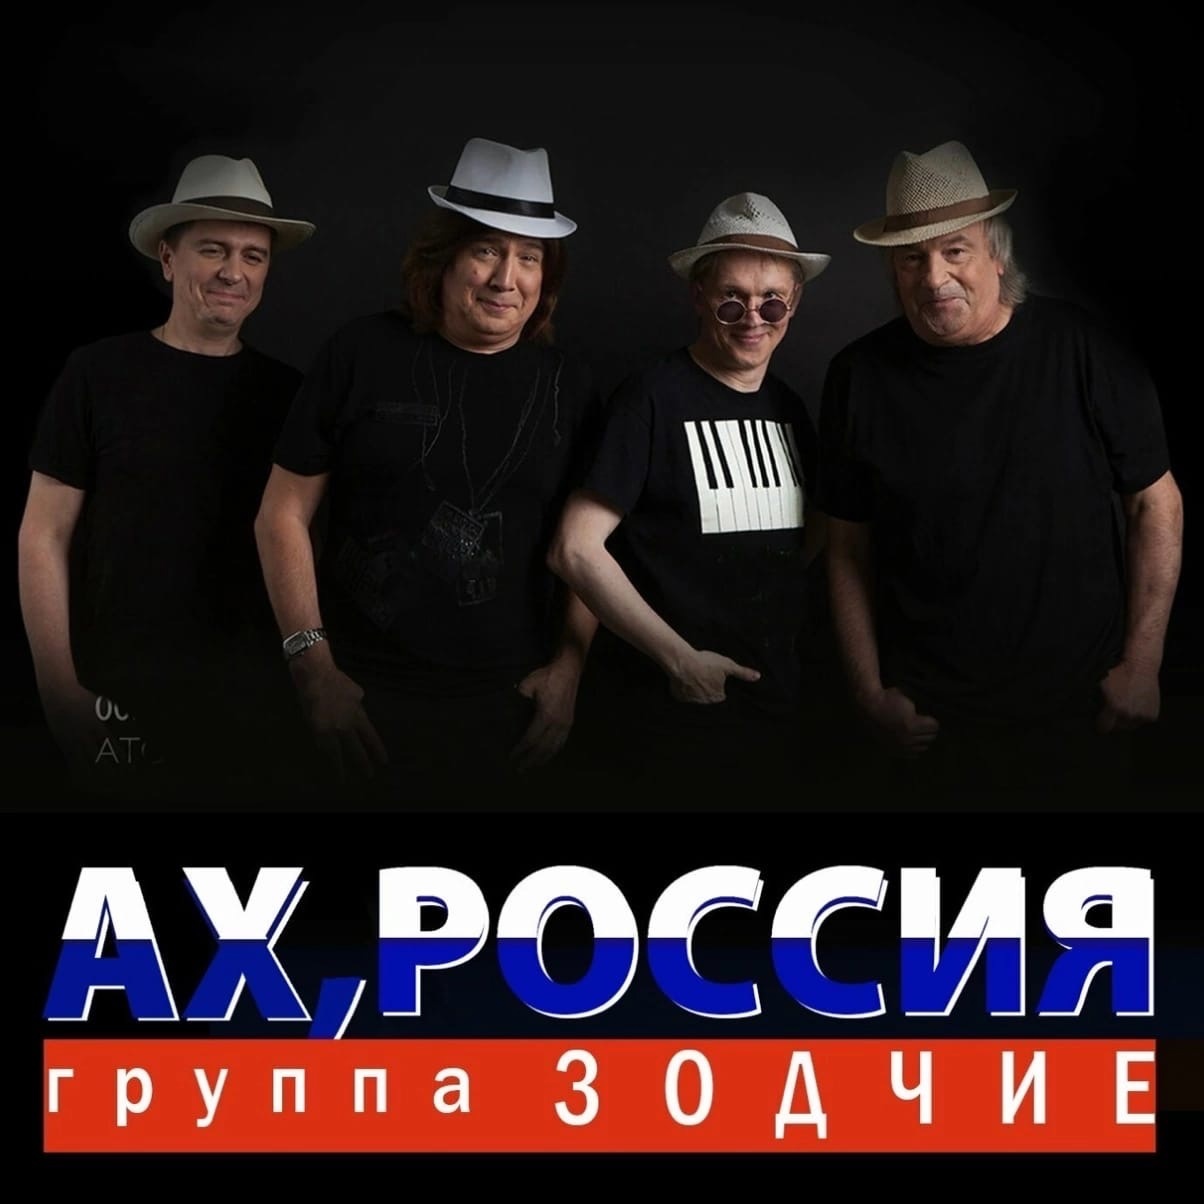 фото: "Ах, Россия!" - группа "Зодчие" впервые споет в Пушкарёв Кафе.